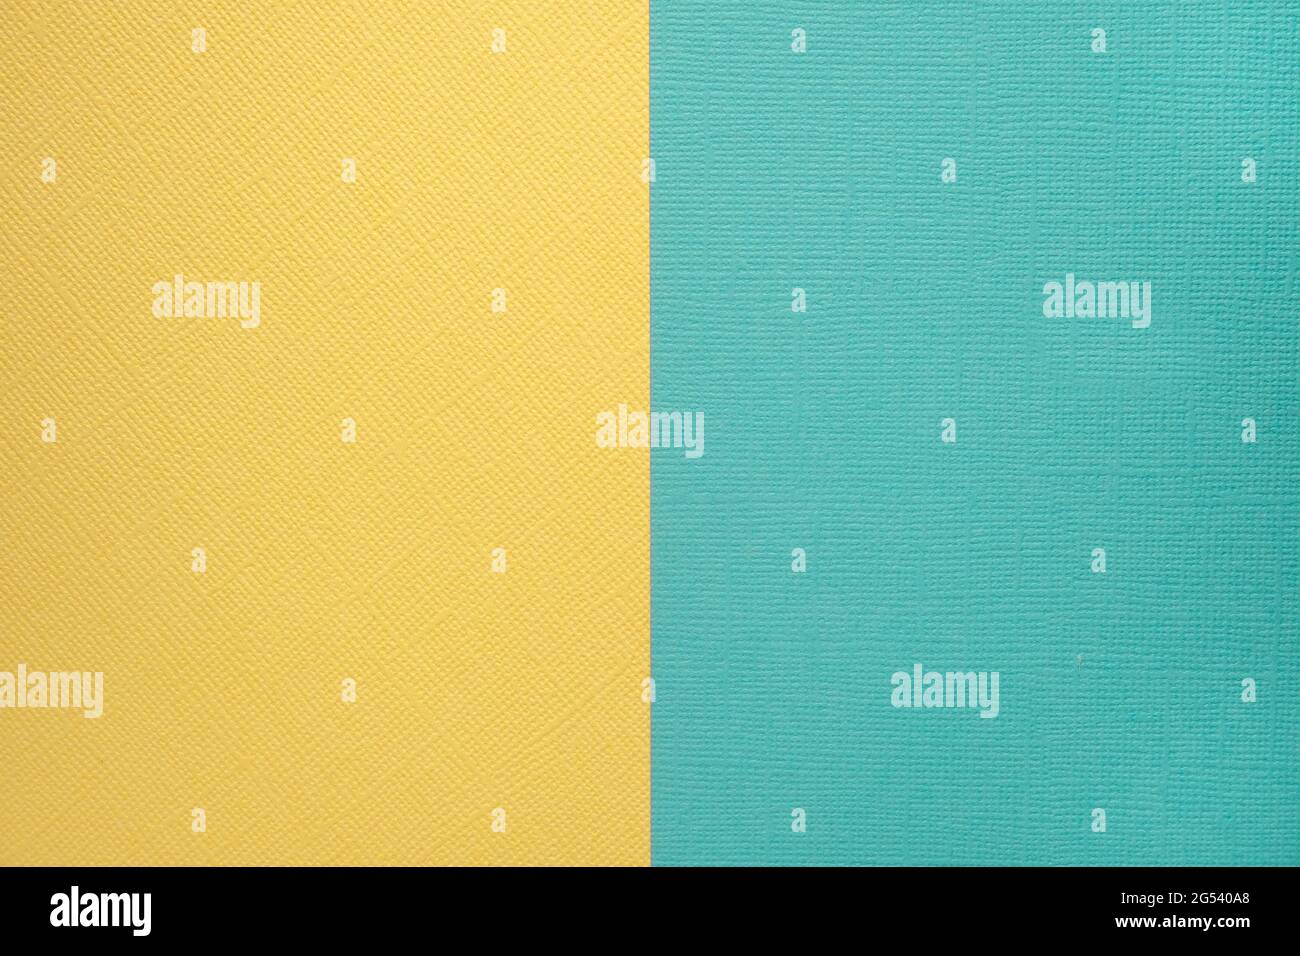 Zwei farbige Papiere mit einer blauen und gelben Überlagerung auf dem Boden. Sie teilen die Hälfte des Bildes. Zweifacher Hintergrund, flach liegend. Hochwertige Fotos Stockfoto